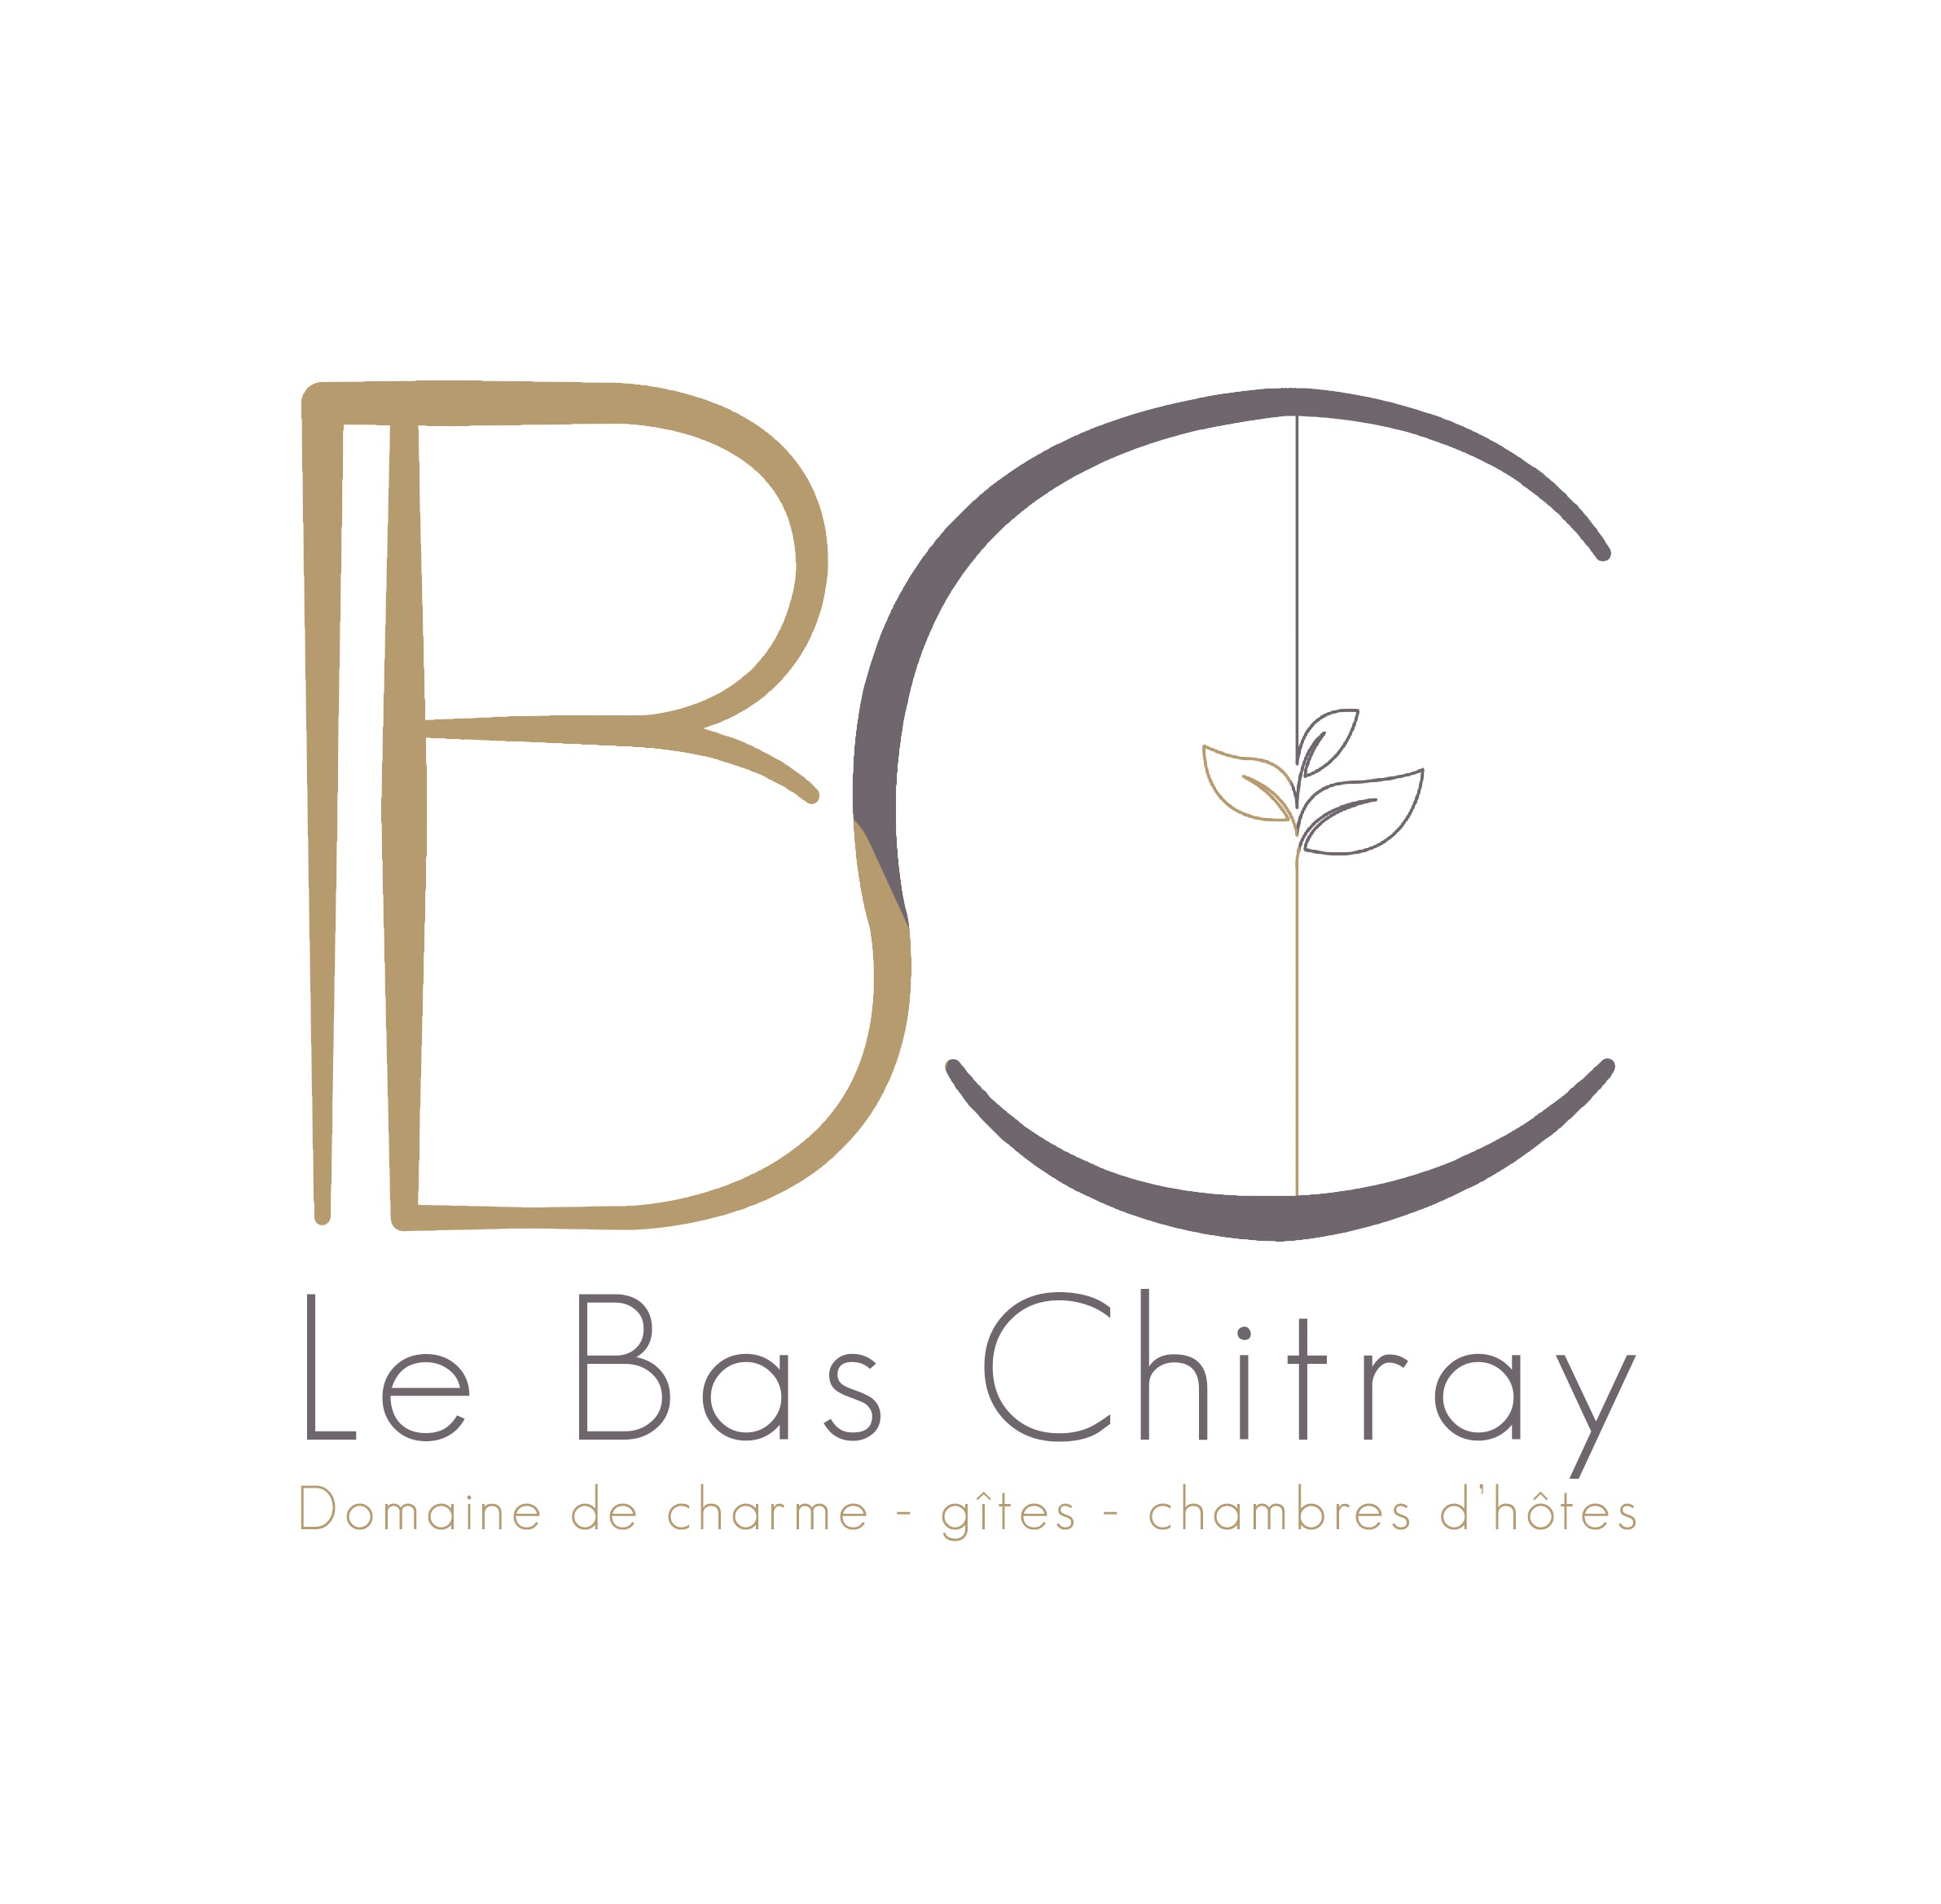 LE BAS CHITRAY